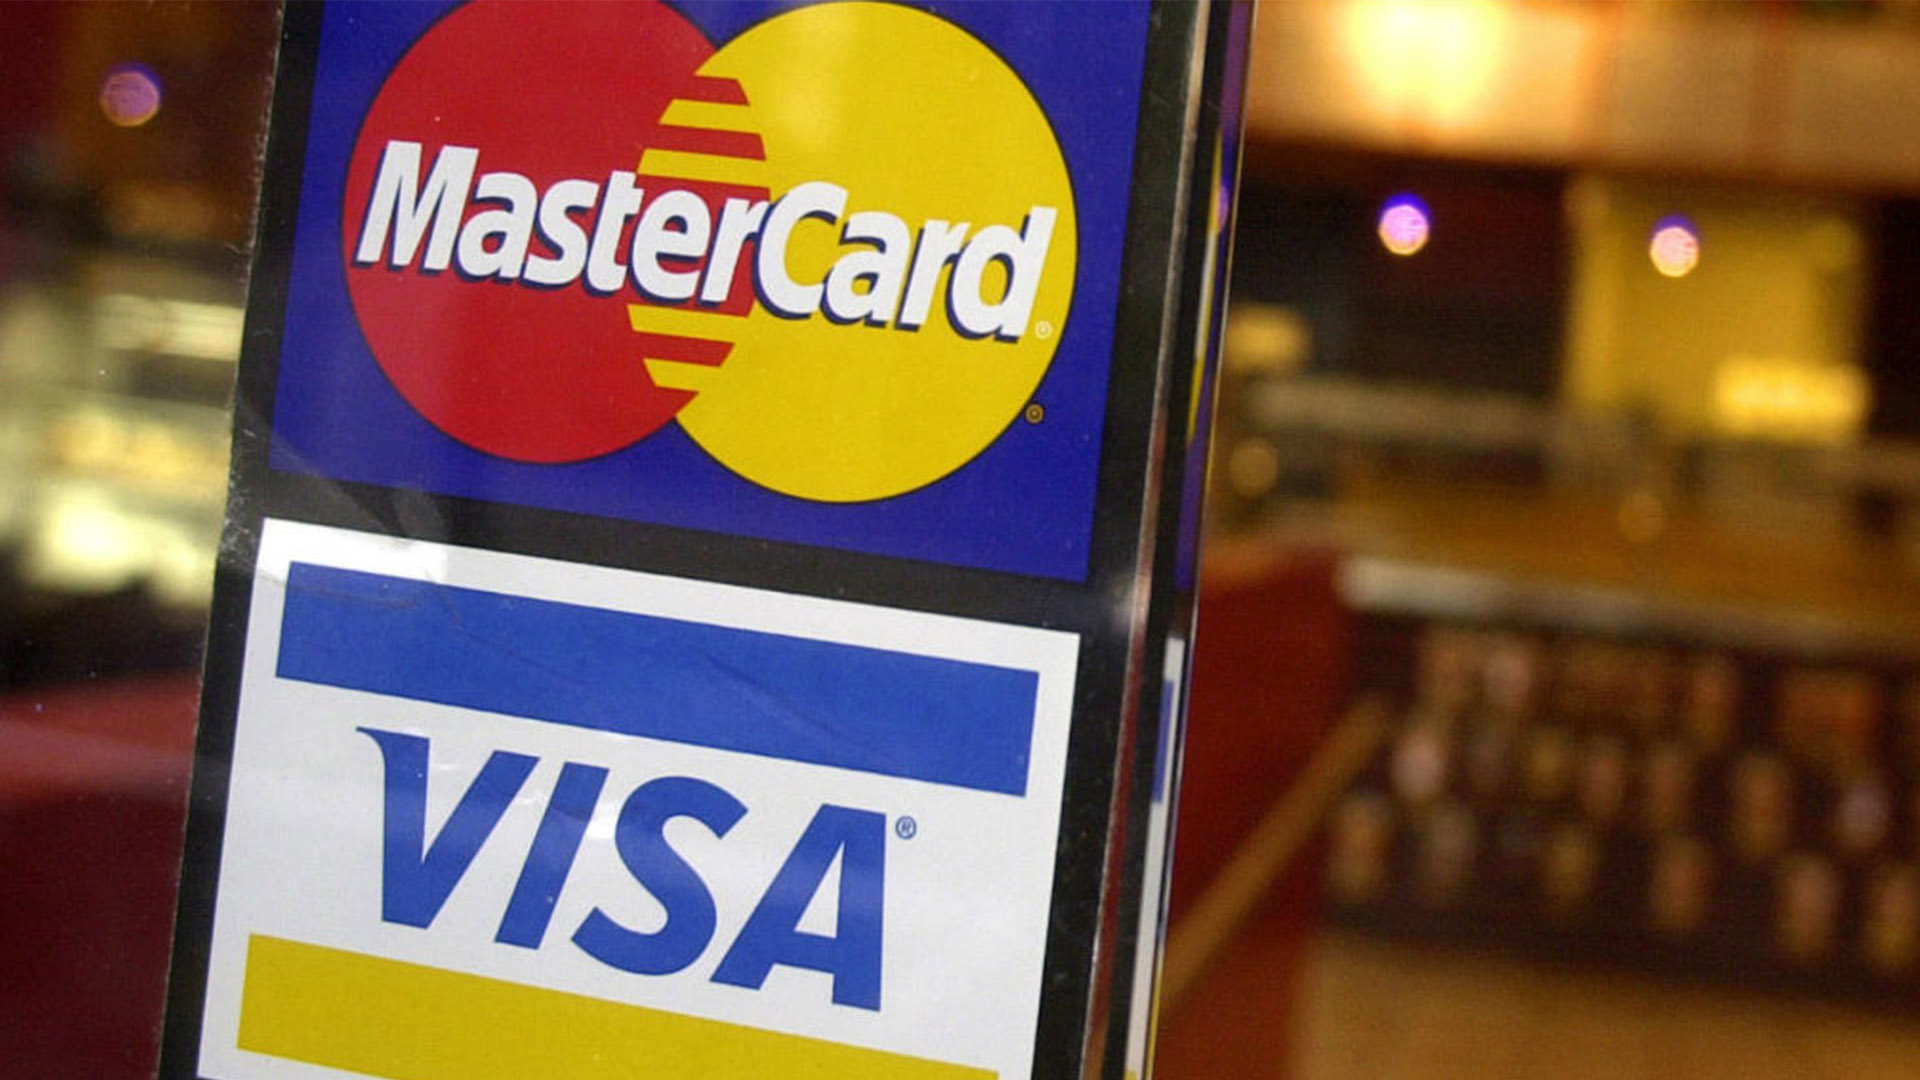 Visa y MasterCard continúan en Venezuela - ACN